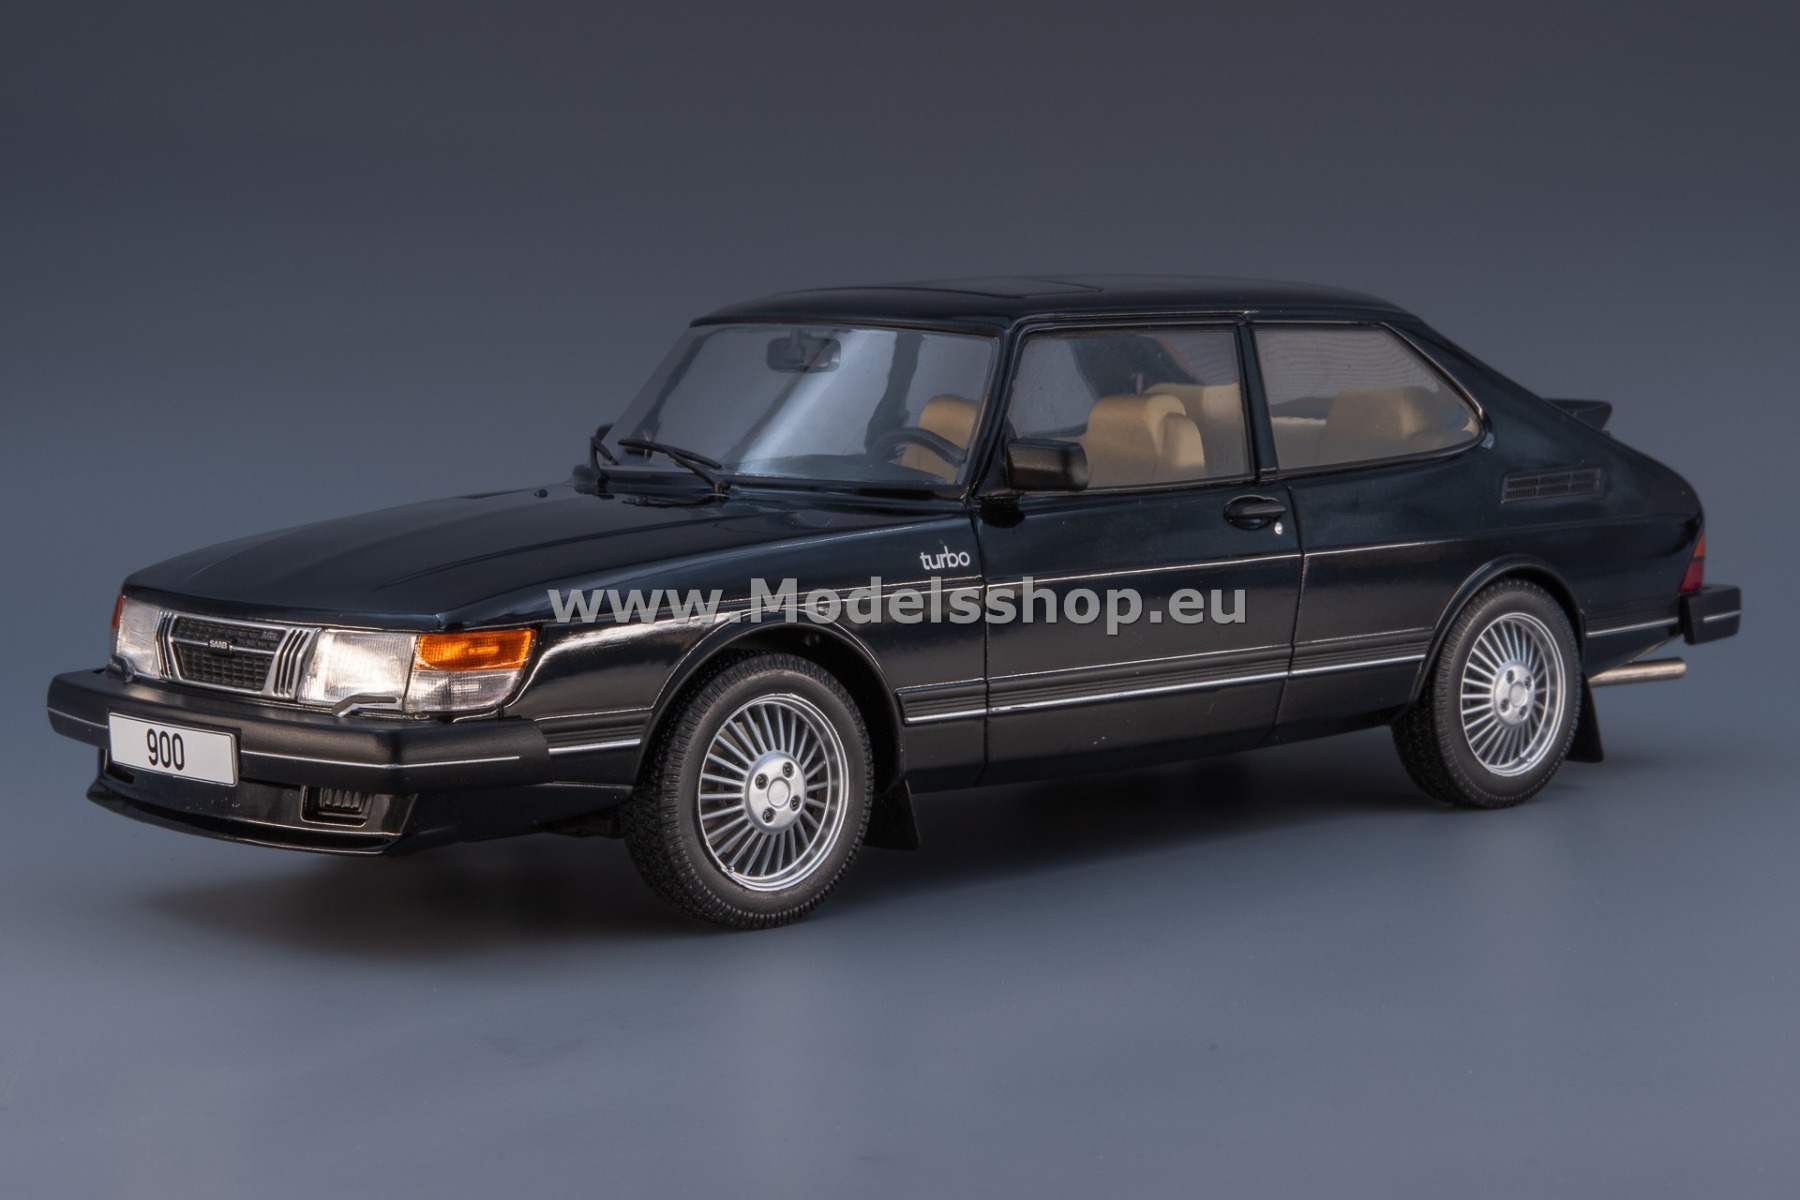 MCG 18338 Saab 900 Turbo, 1981 /black/